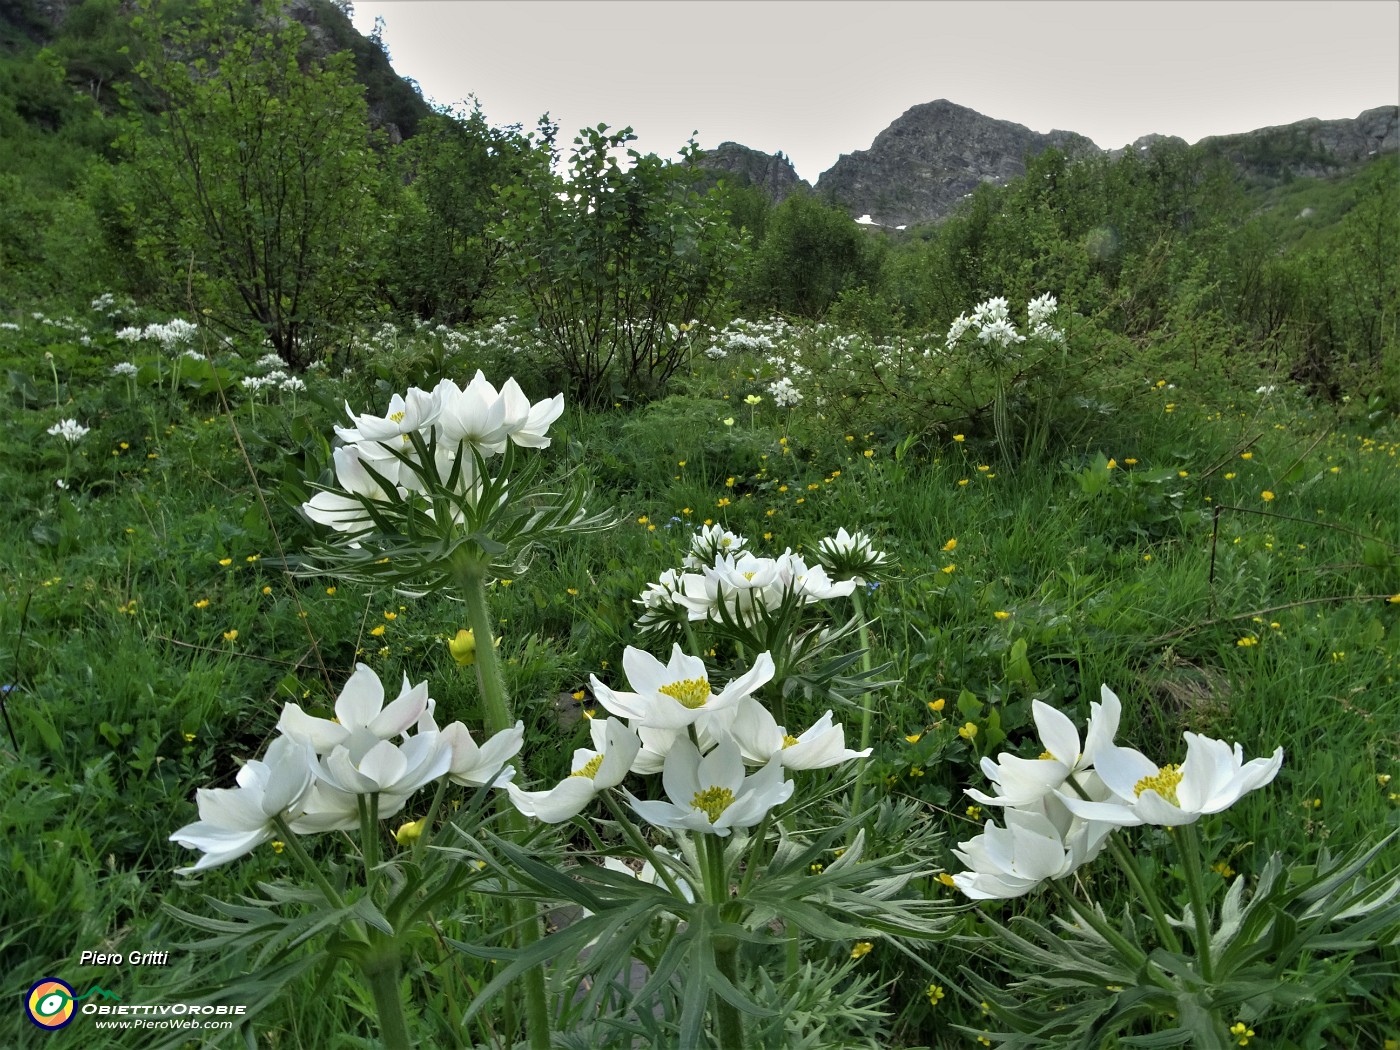 18 Salendo sul lato sinistro nel verde fiorito di anemoni narcissini (Anemonastrum narcissiflorum).JPG